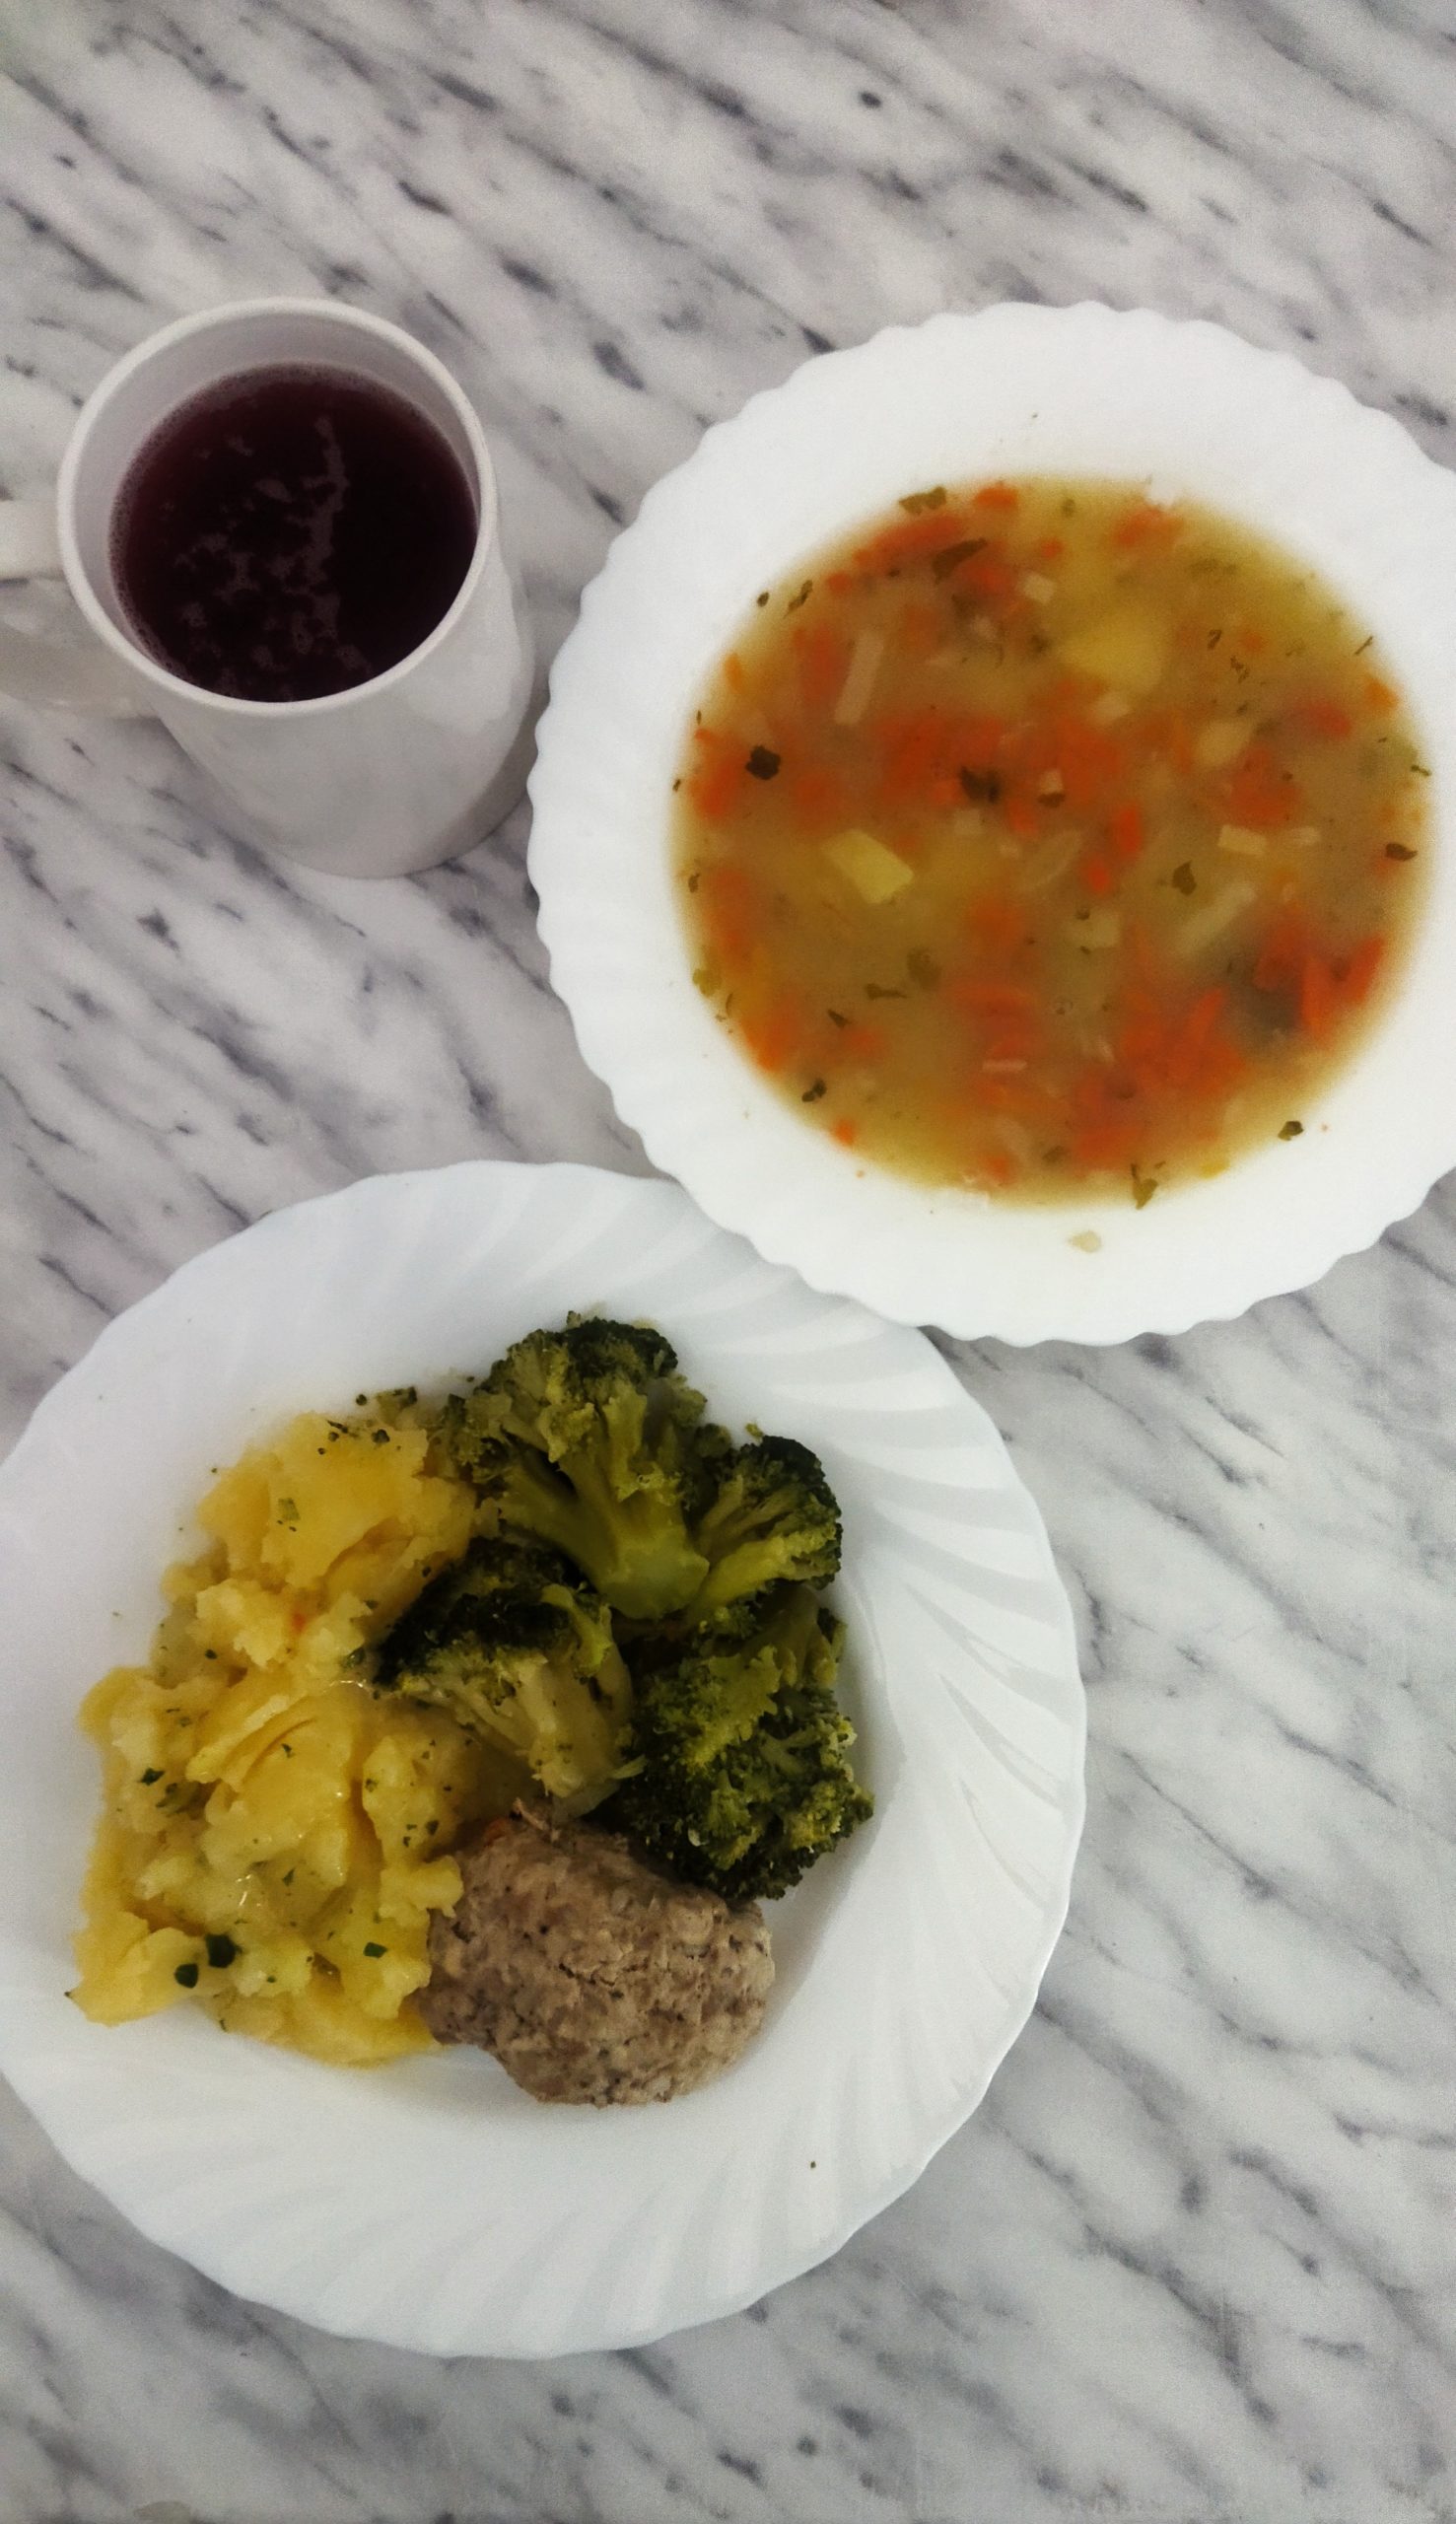 na zdjęciu obiad złożony z dwóch dań. Na talerzu głębokim zupa jarzynowa, na talerzu płaskim ziemniaki polane sosem mięsnym, pulpet i brokułu. Powyżej talerzy kubek z kompotem